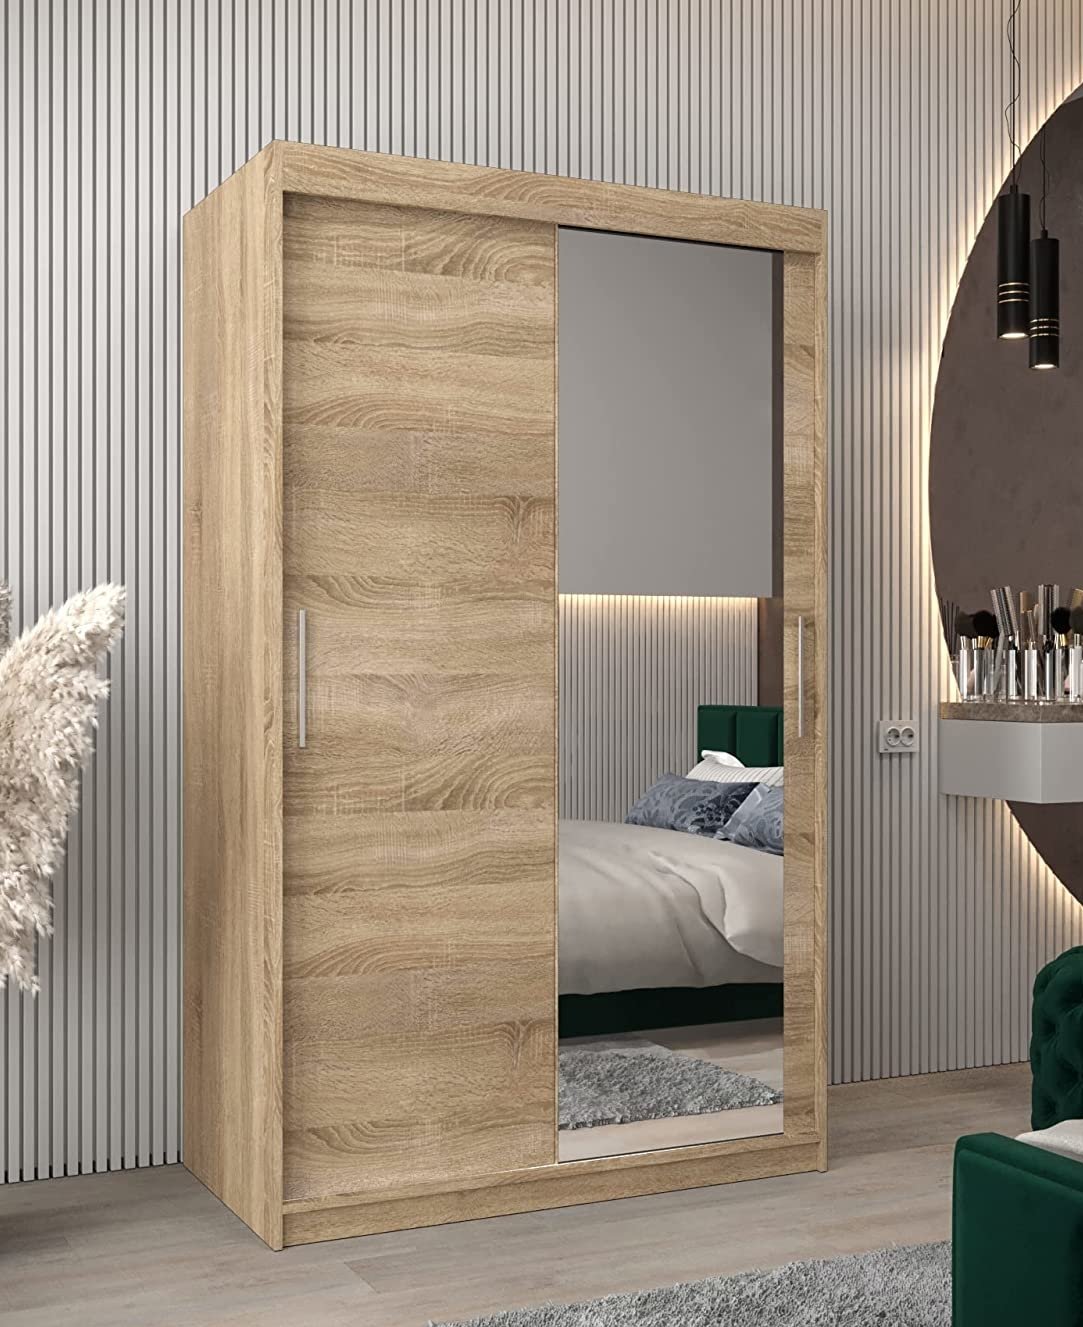 Schwebetürenschrank 120 cm mit Spiegel Eiche Holz Natur Schiebetüren Kleiderschrank platzsparender, moderner und funktioneller Schlafzimmer Schrank